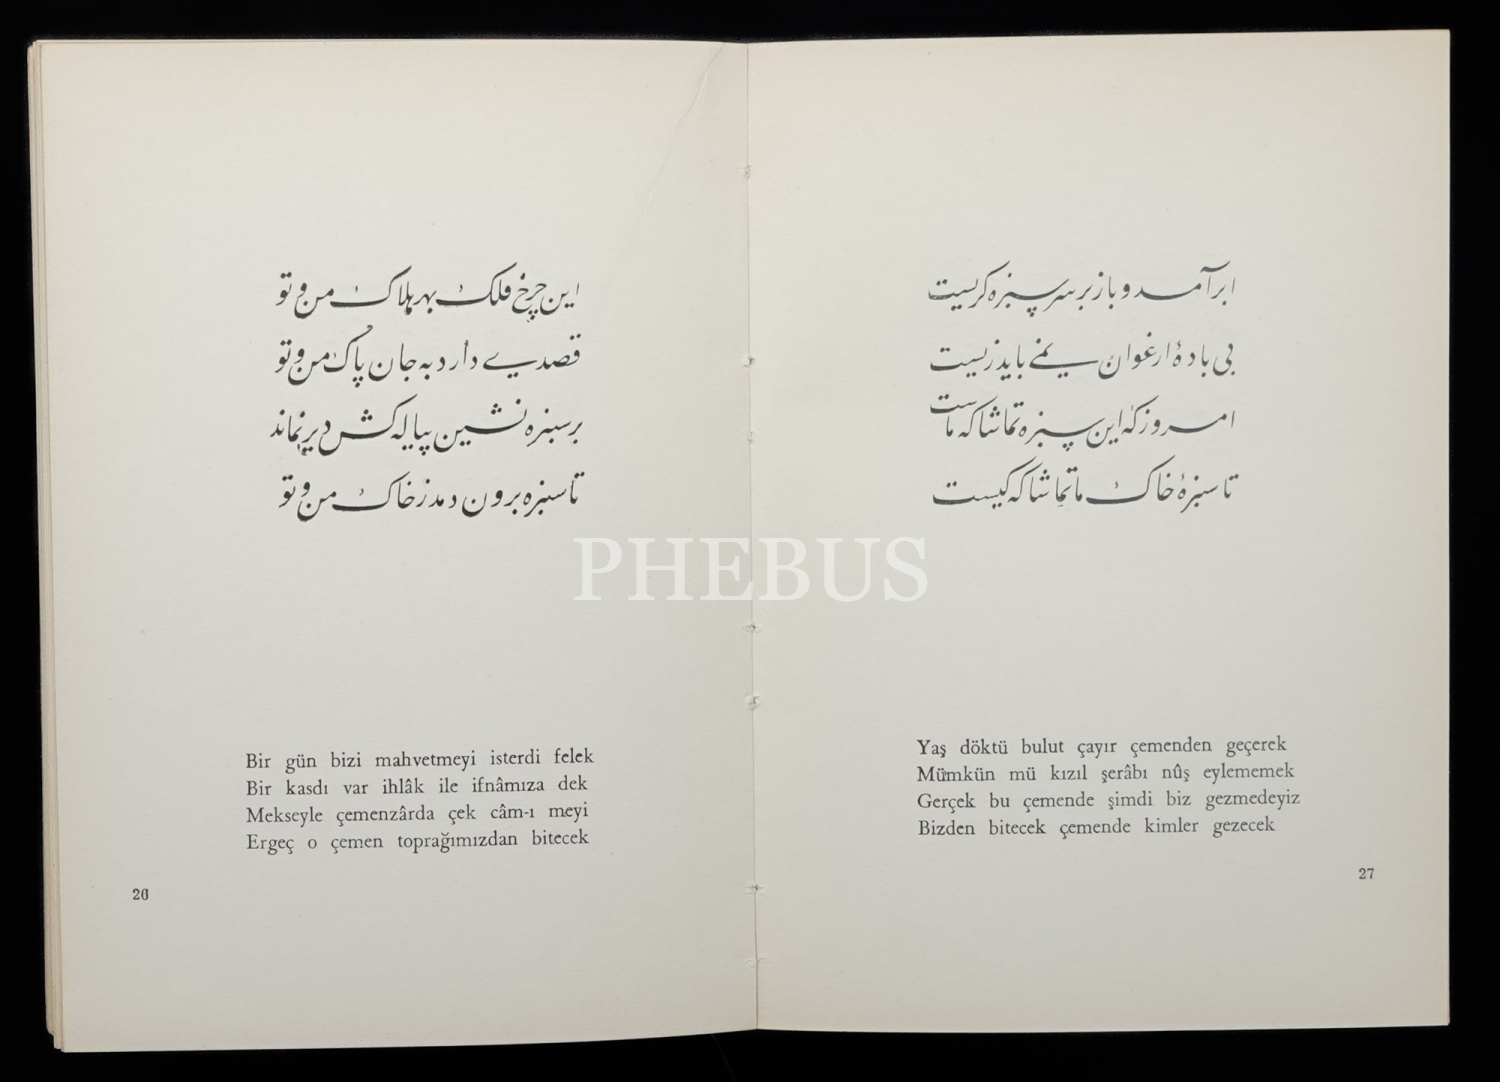 RUBÂİLER,  HAYYAM RUBÂYİLERİNİ TÜRKÇE SÖYLEYİŞ, Yahya Kemal Beyatlı, 1963, İstanbul Fetih Cemiyeti Neşriyâtı, 47+60 sayfa, 14x20 cm...